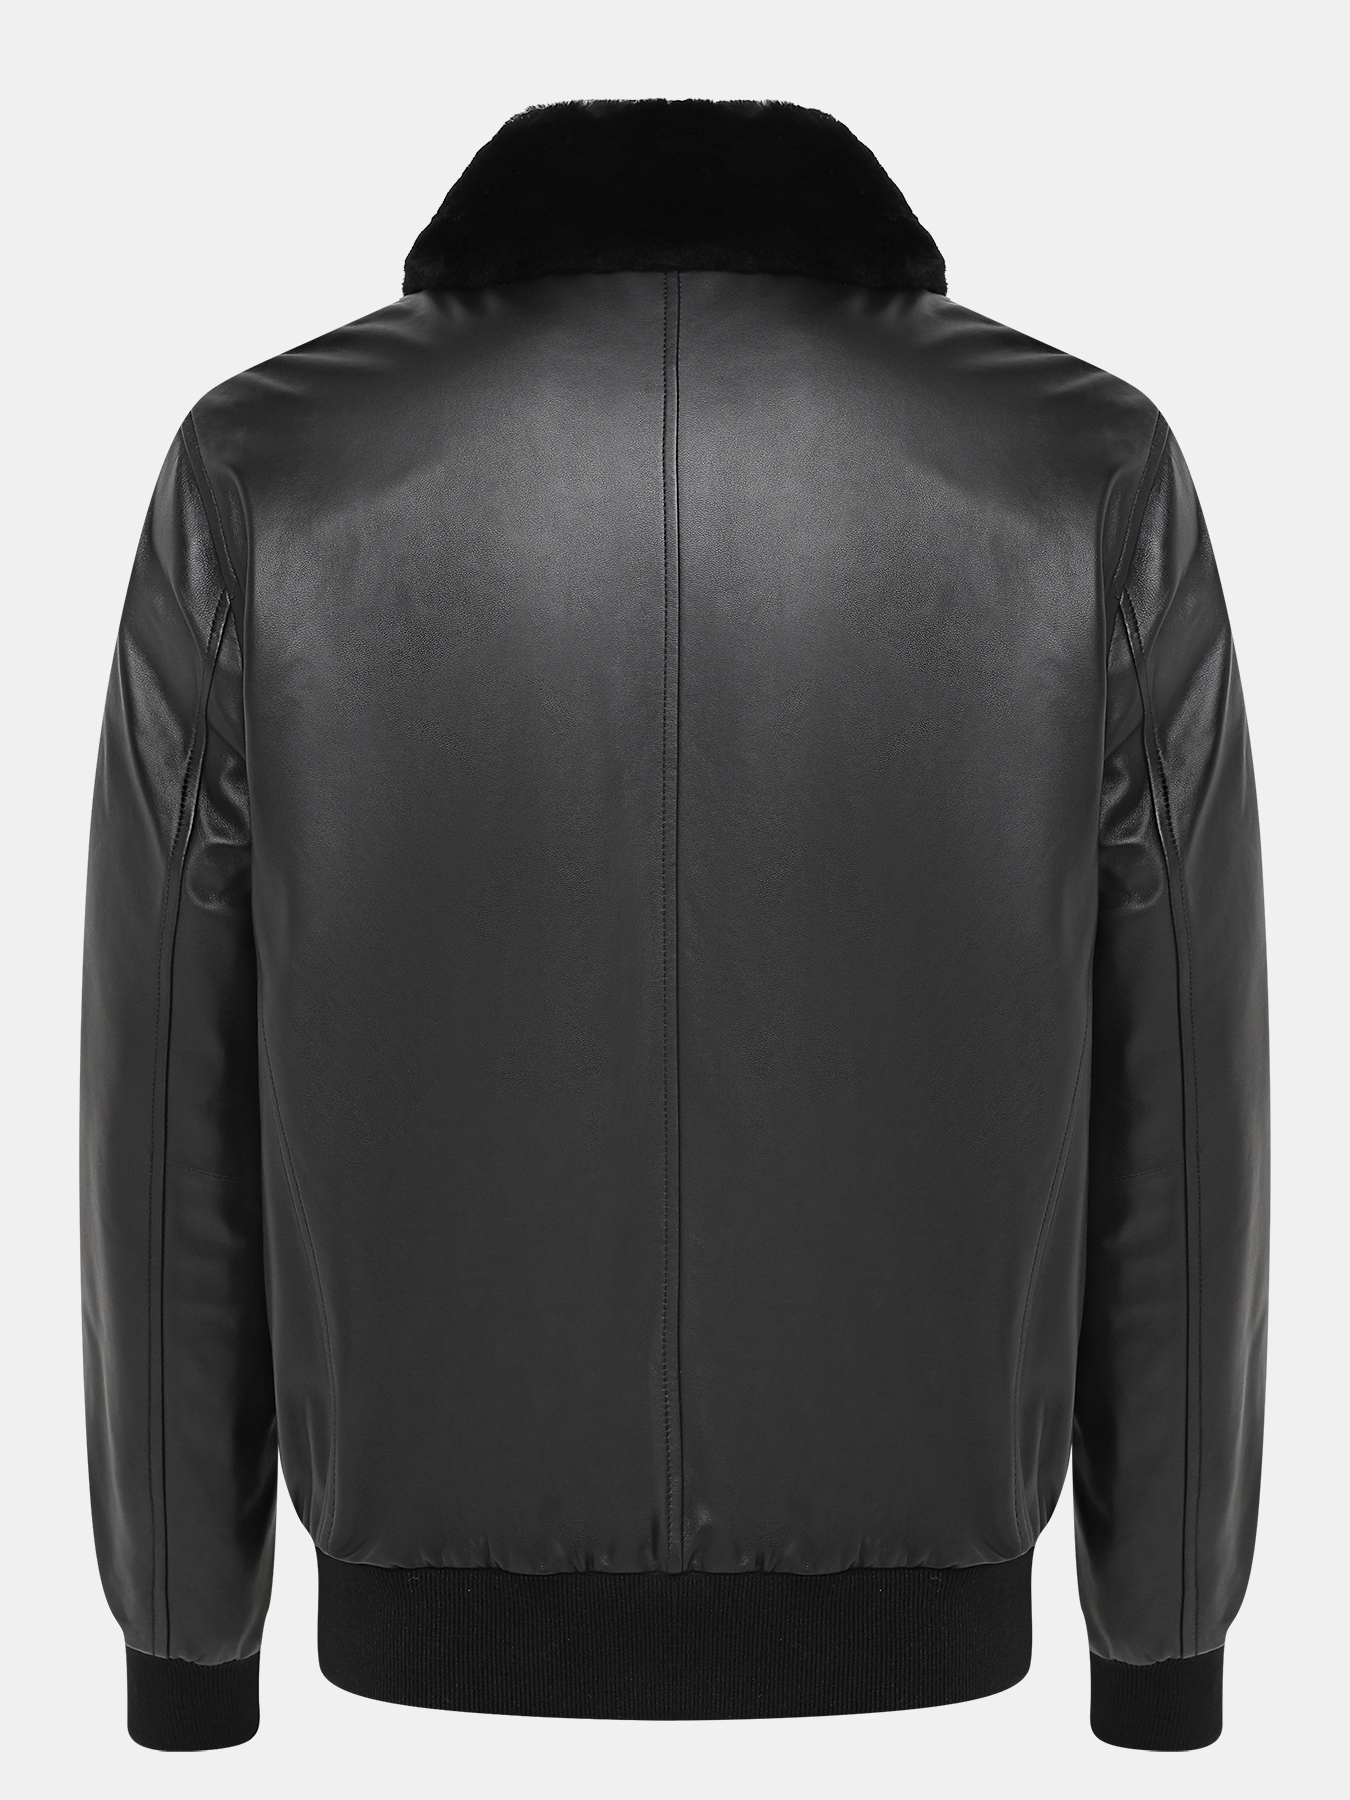 Кожаная куртка Alessandro Manzoni Yachting 418921-025, цвет черный, размер 48 - фото 5